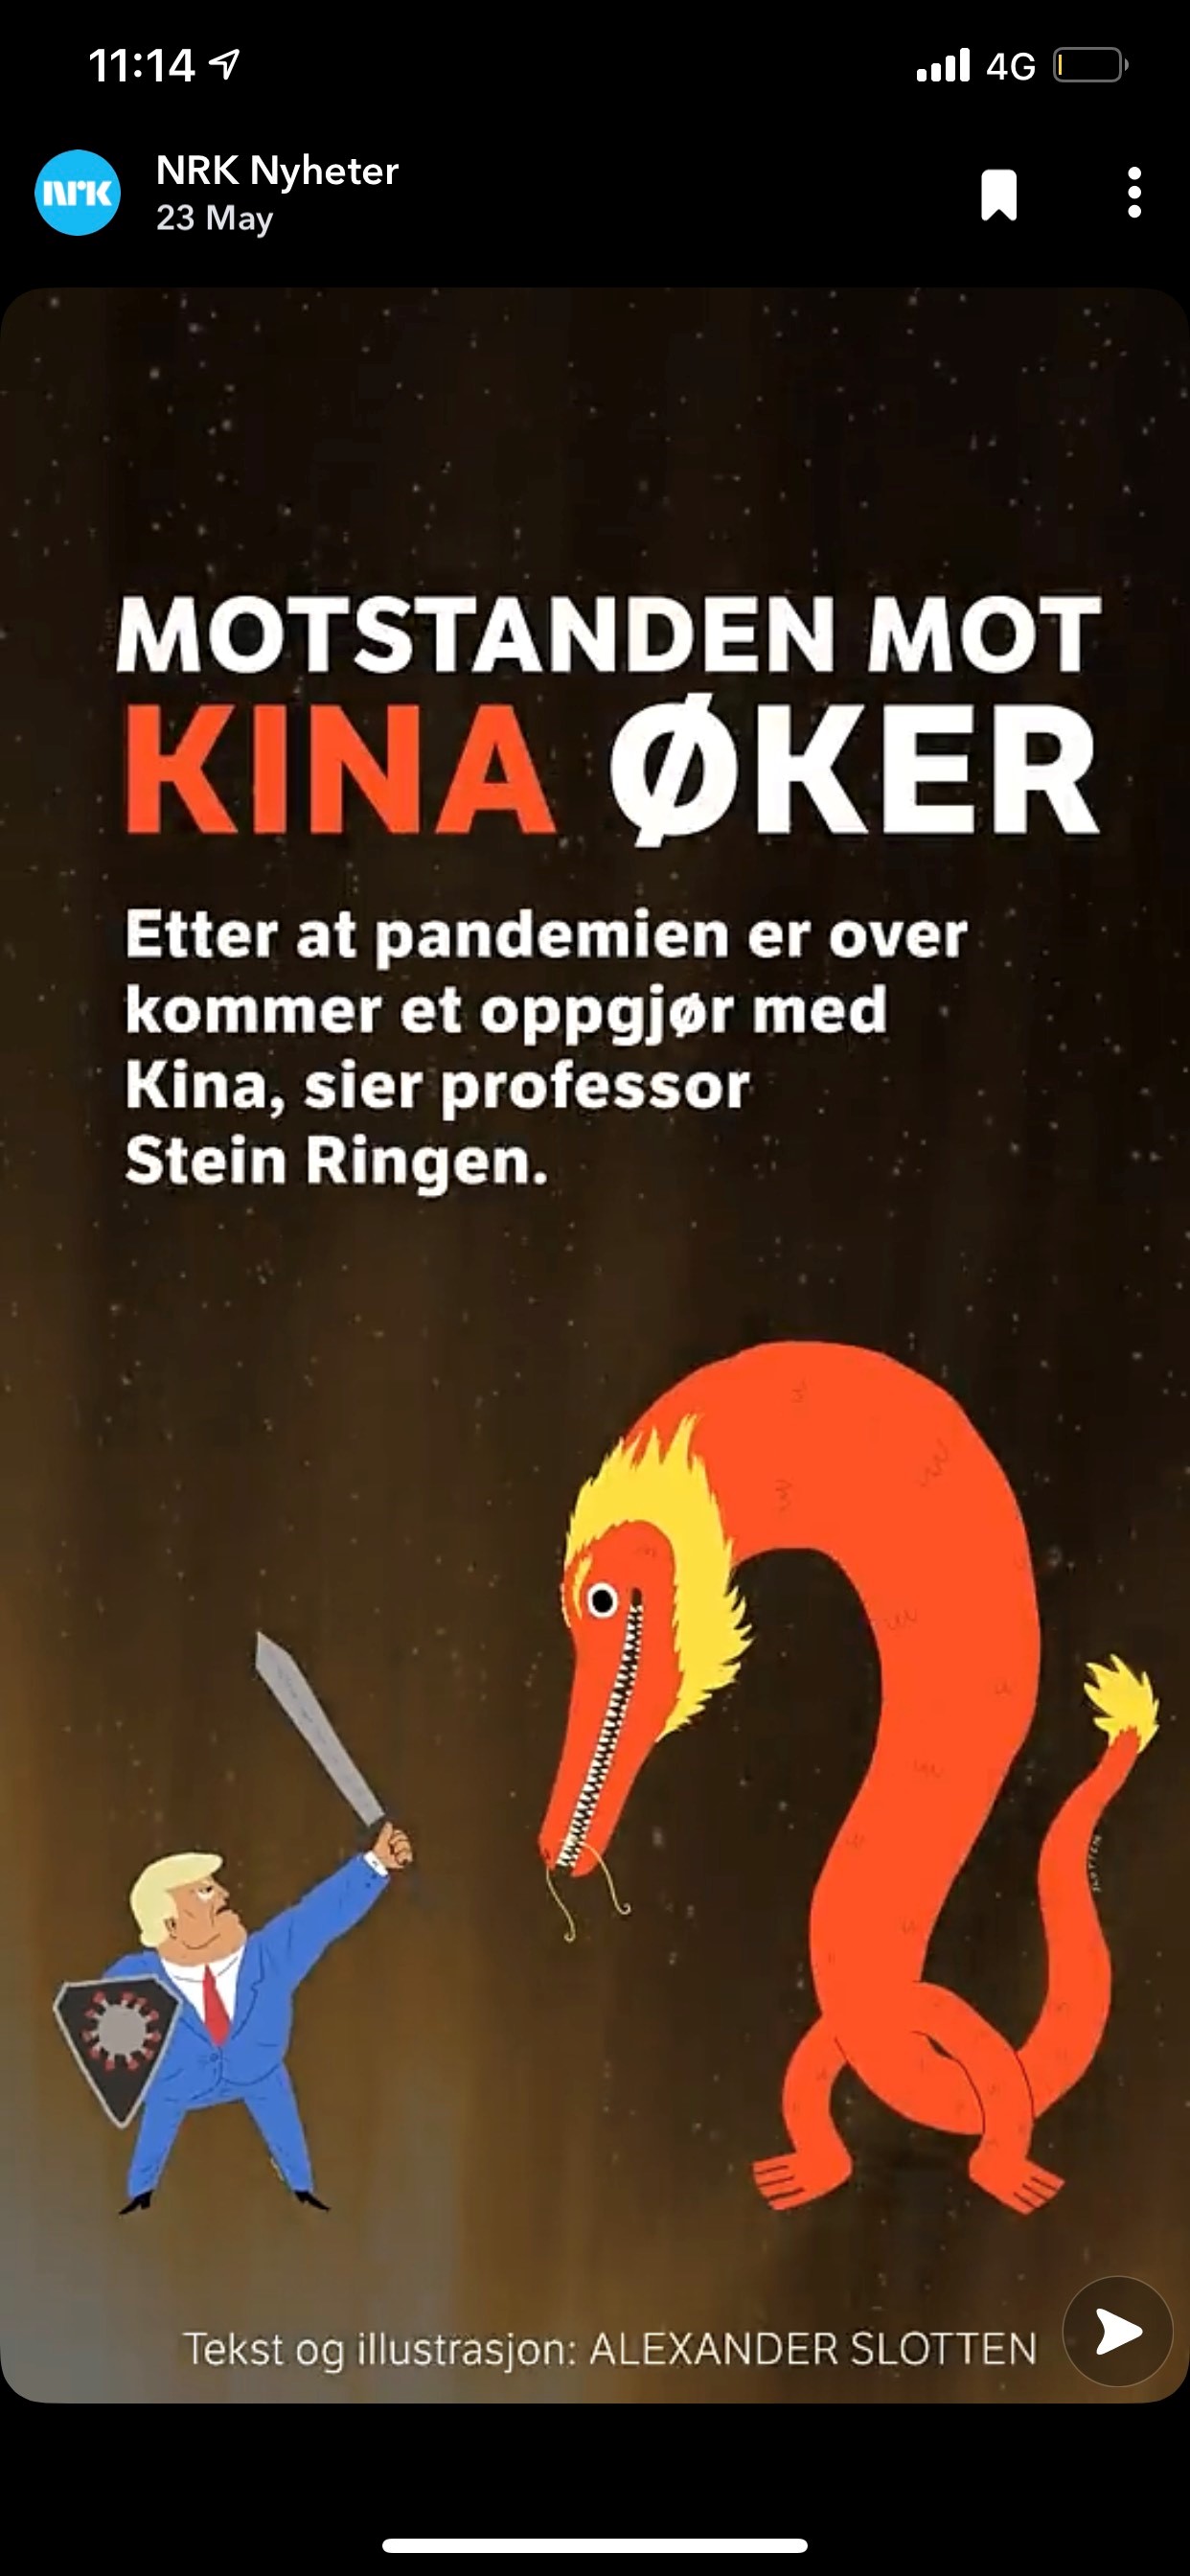 Motstanden mot Kina øker, Alexander Slotten for NRK Nyheter.